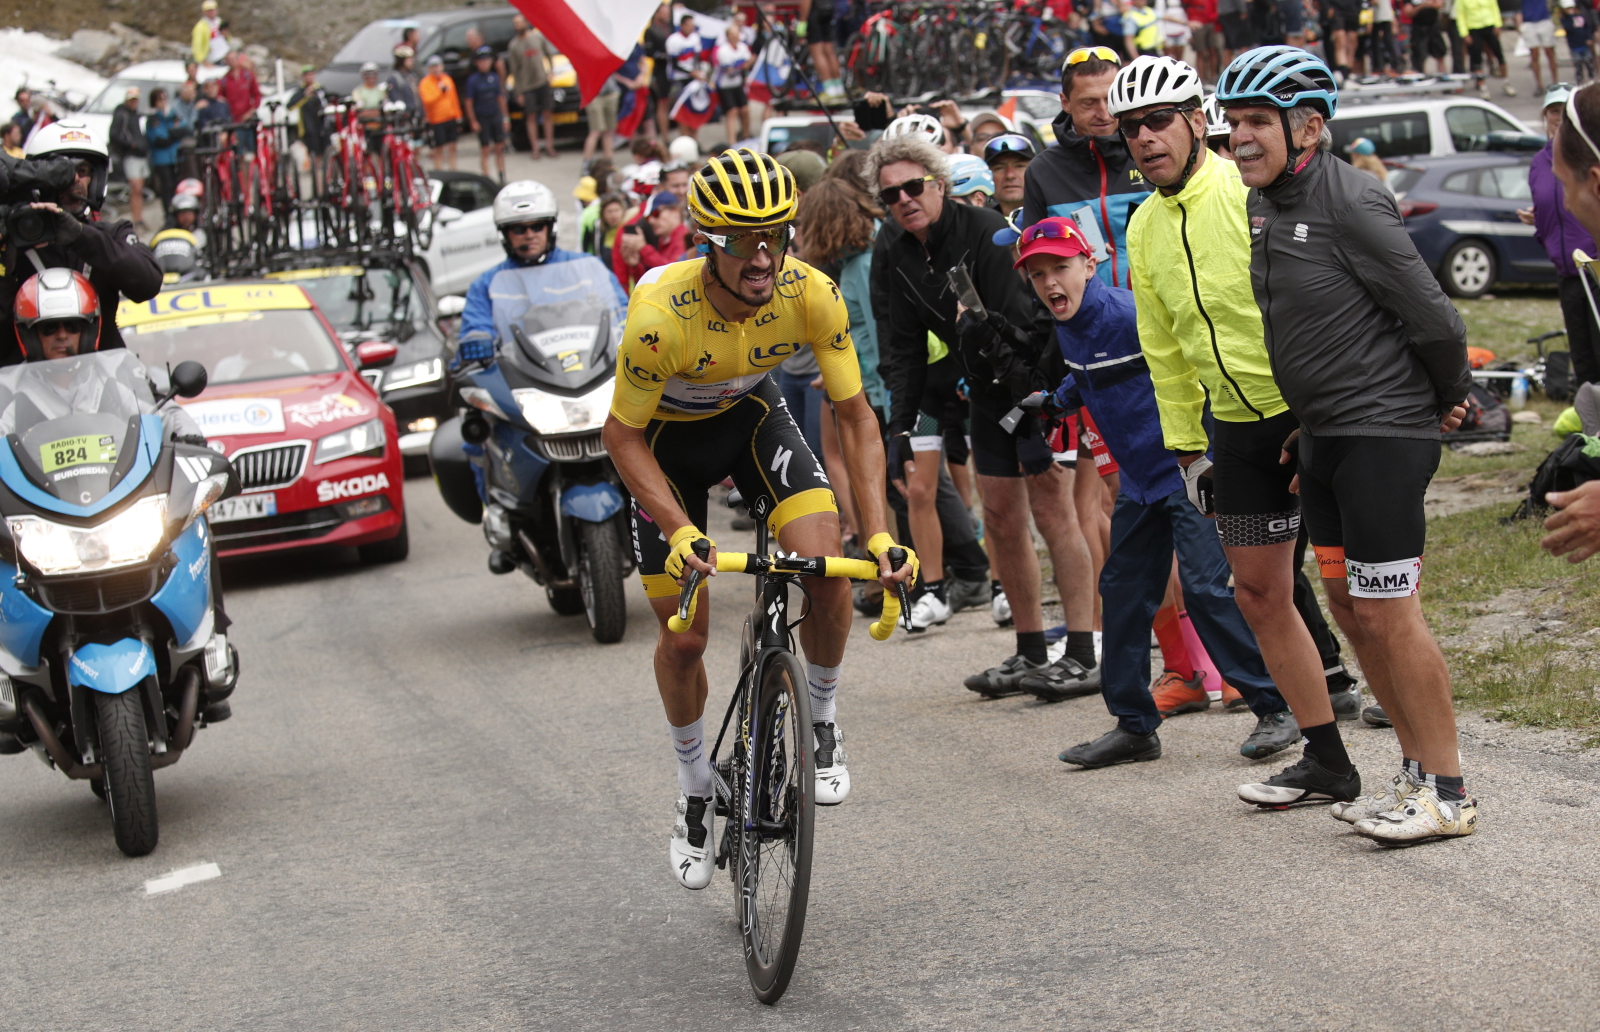 19 etap Tour de France. Fot. PAP/EPA/YOAN VALAT